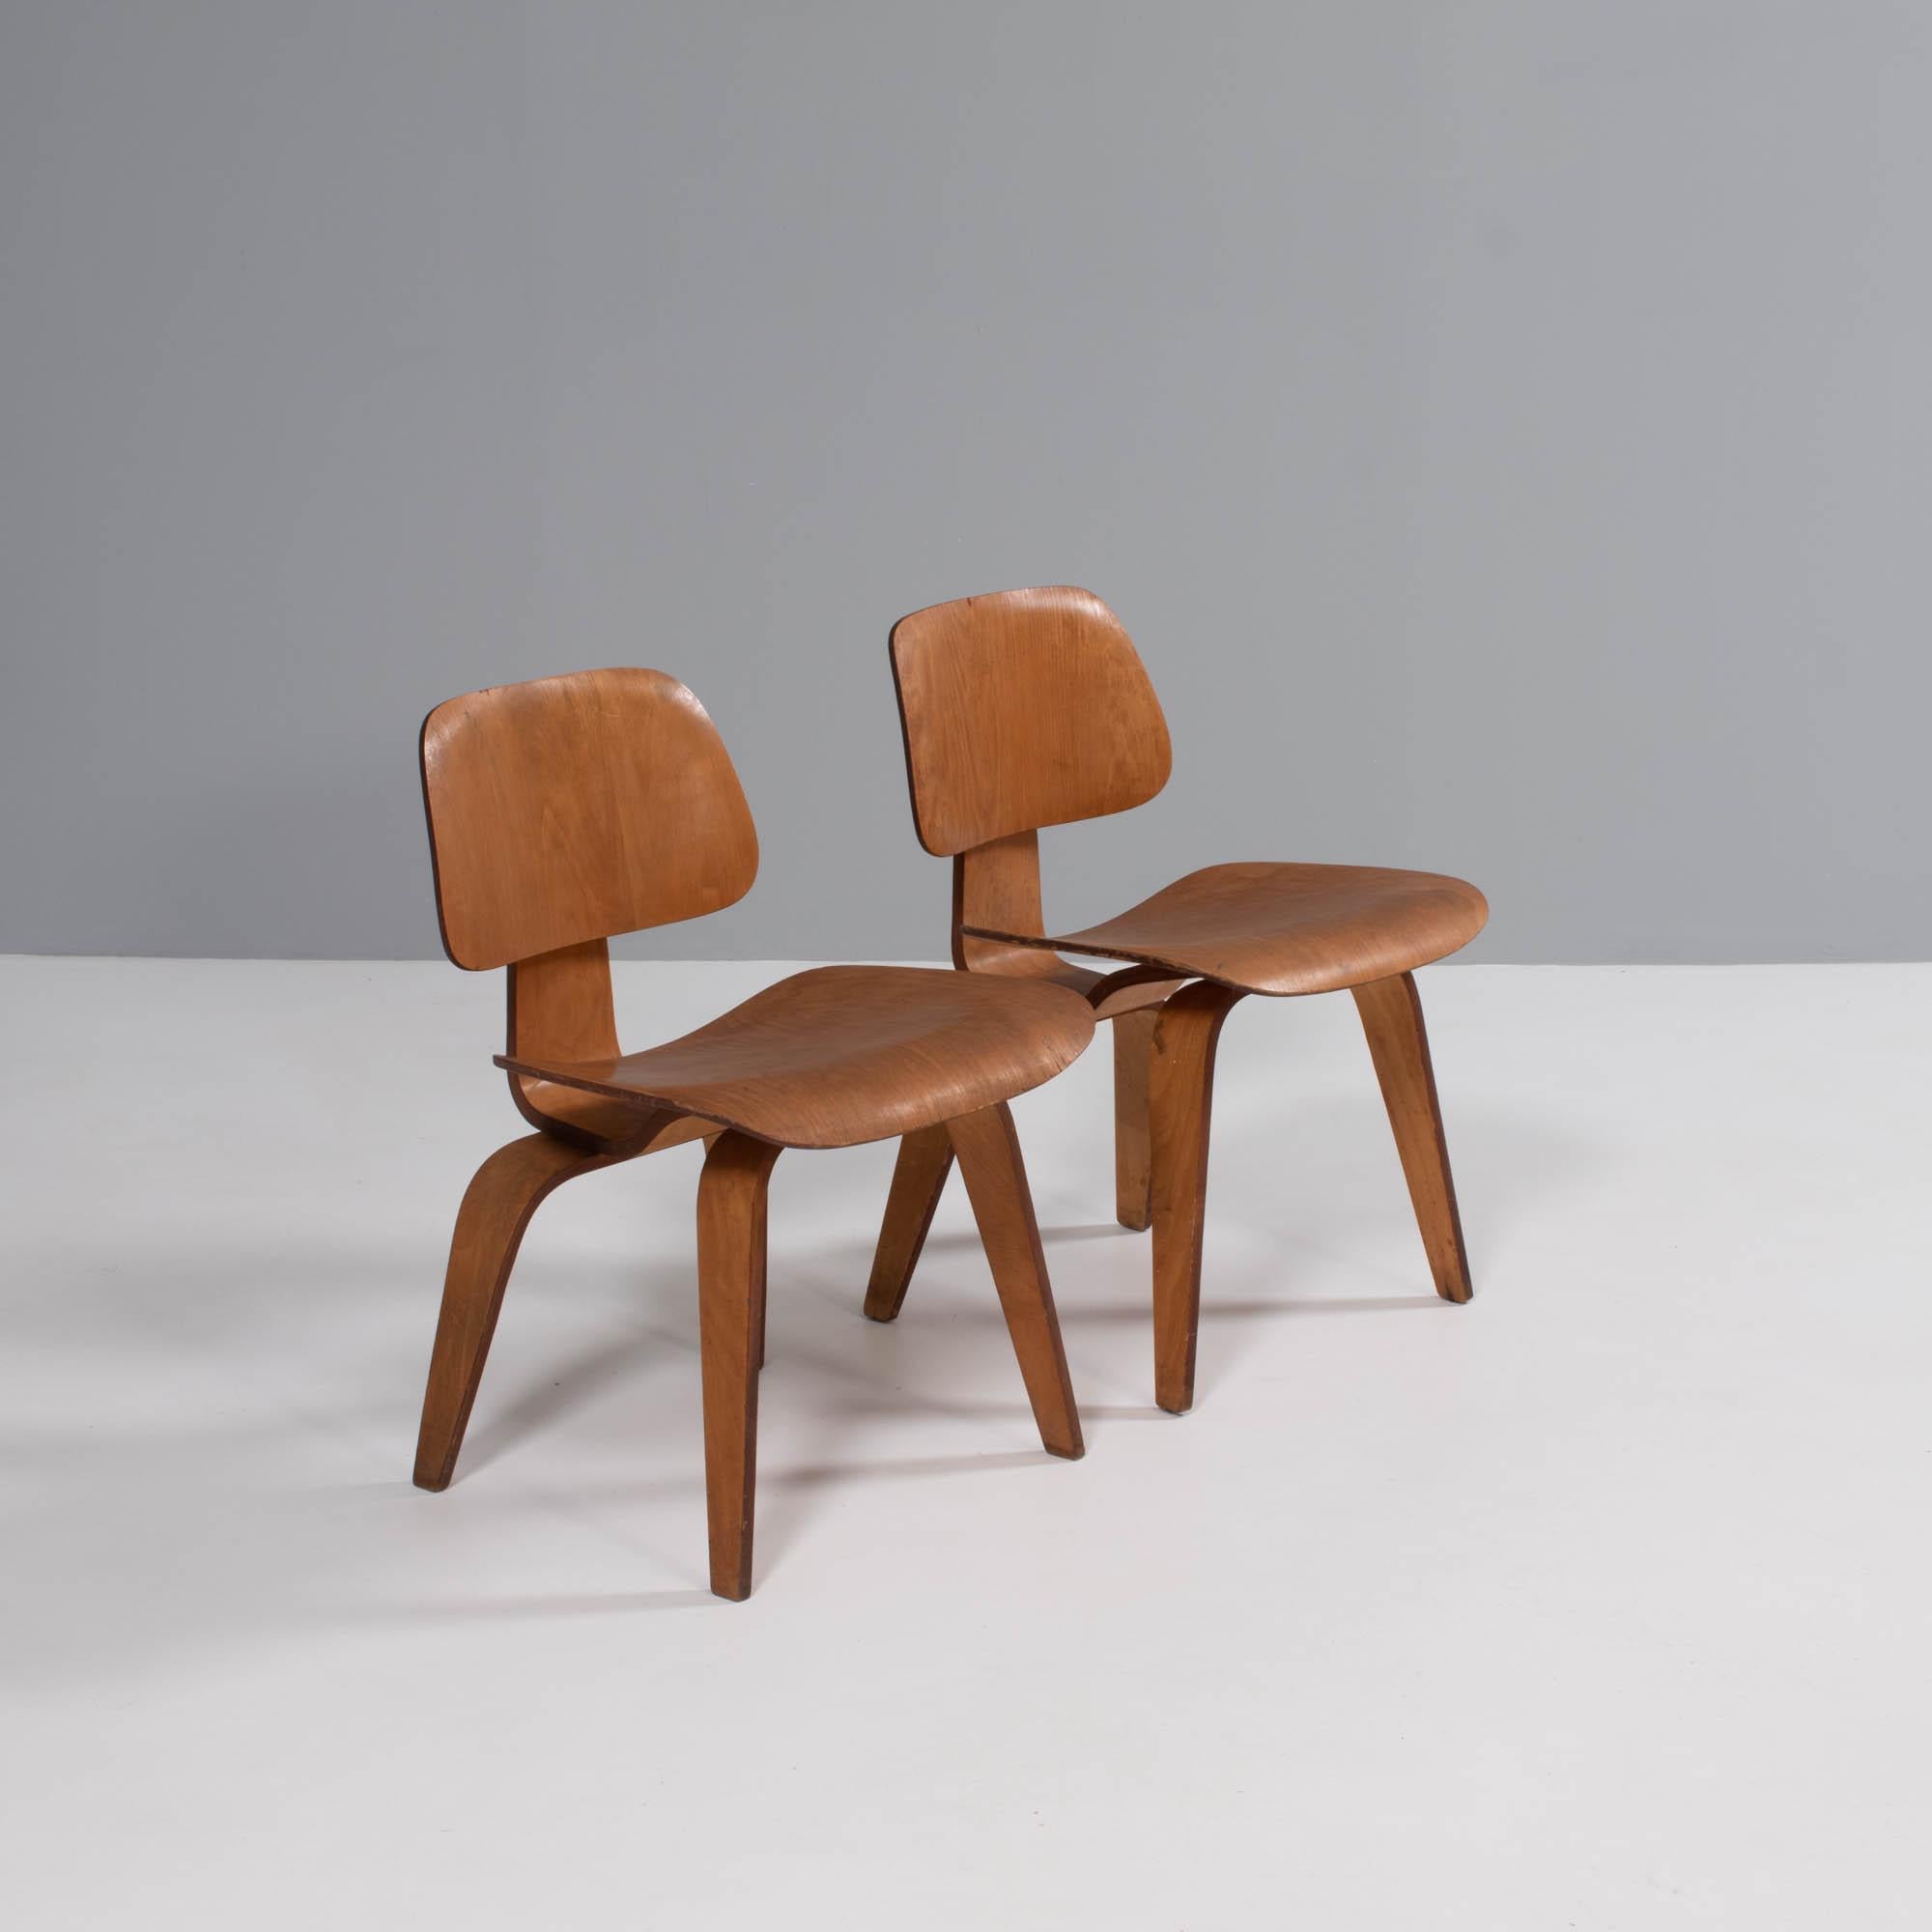 Der DCW-Stuhl wurde ursprünglich 1946 auf den Markt gebracht. 1950 übernahm Herman Miller die Herstellung der Stühle. Dies dauerte bis 1953, als die Stühle bis 1994 aus der Produktion genommen wurden. 

Diese Stühle gehören der 2. Generation an